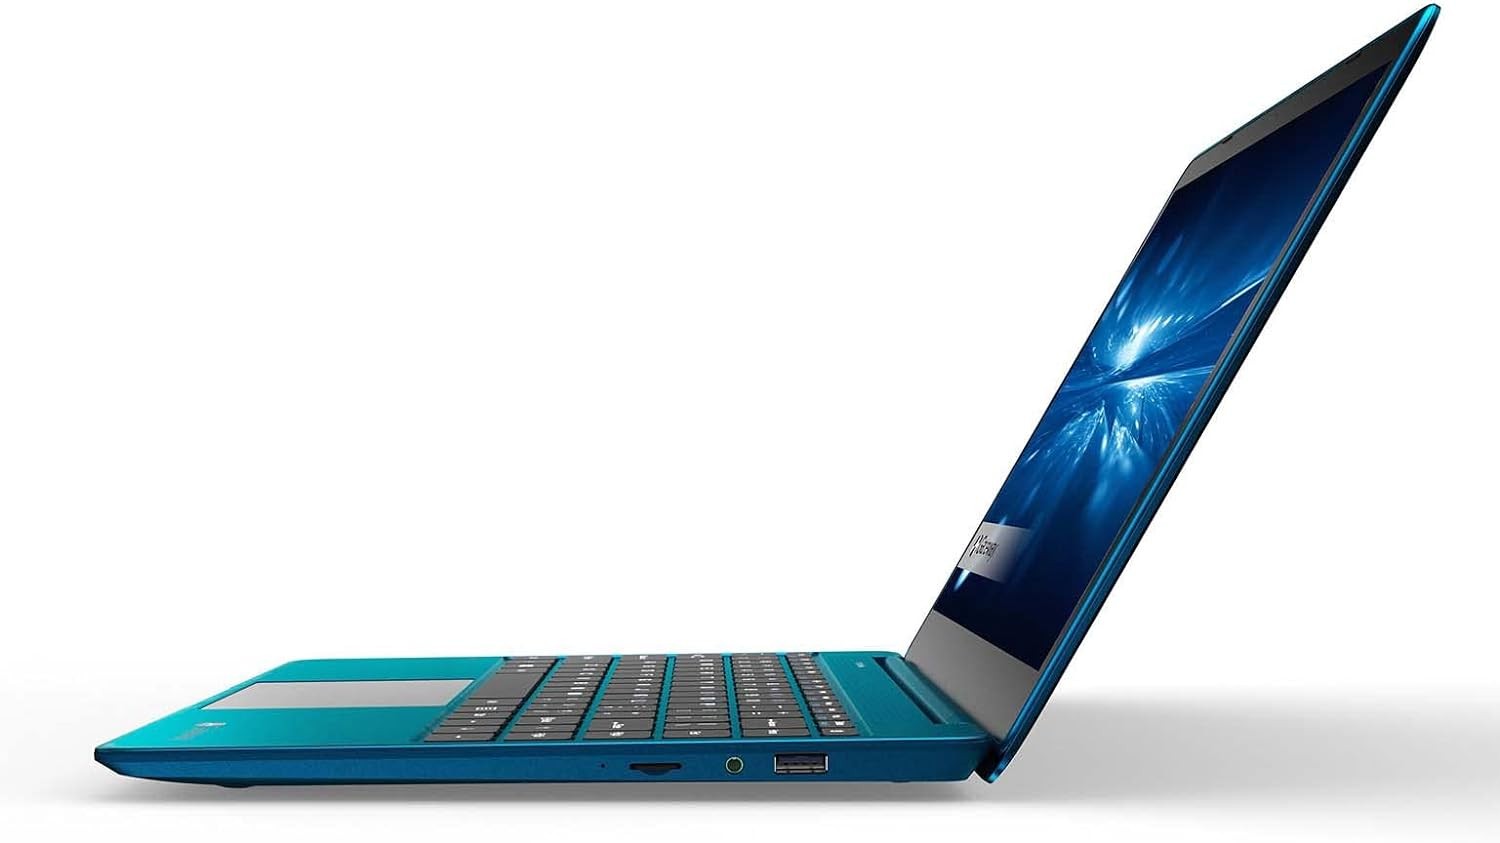 computadoras y laptops - Laptop Gateway FHD de 14.1" en azul i5-1135G7, 16GB RAM, 512gb de almacenamiento